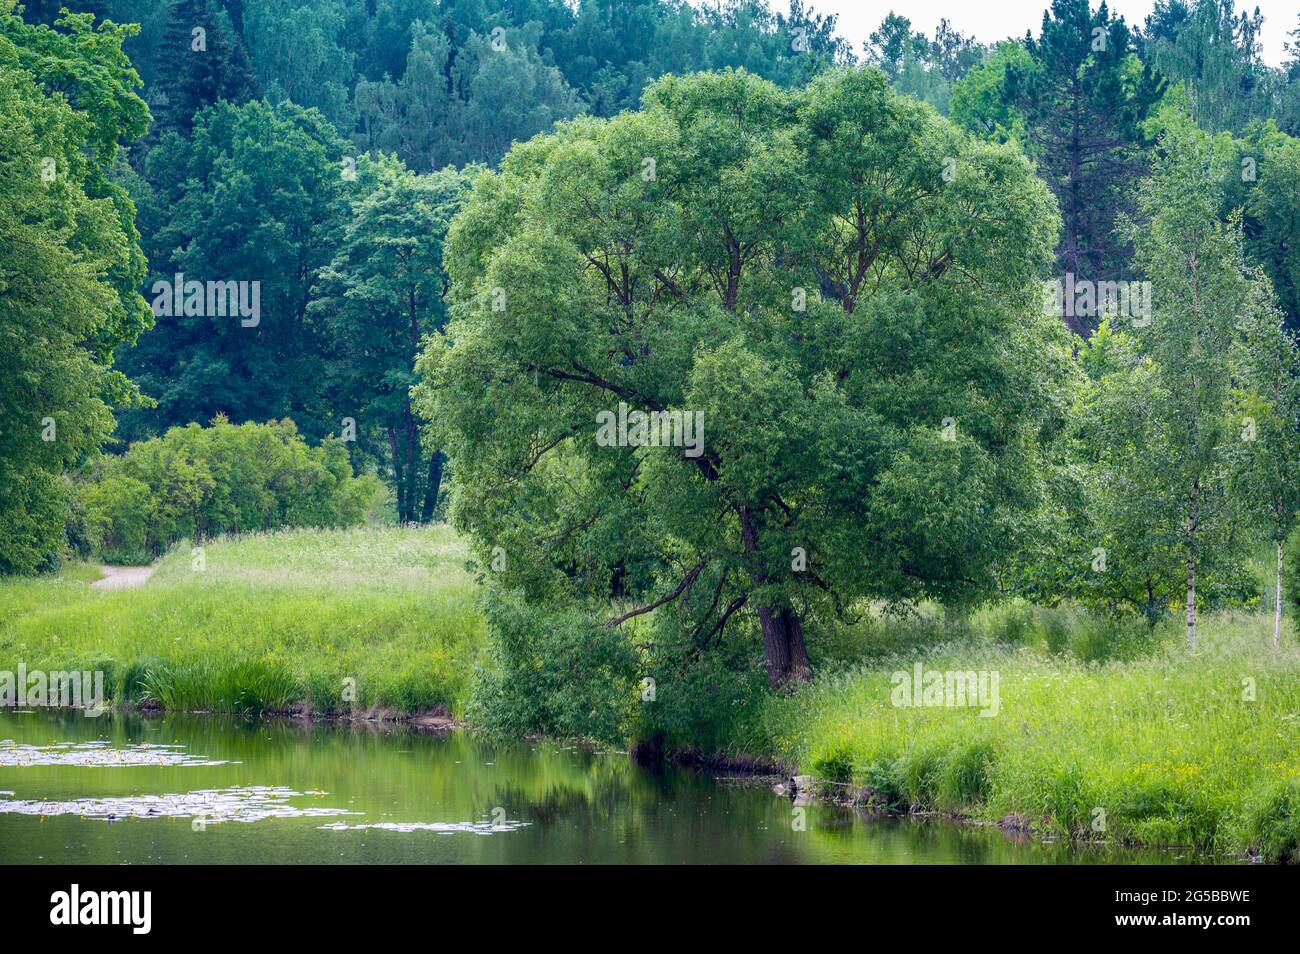 Schöne Wald- und Flusslandschaft an EINEM Summers Day. Großer Baum am Ufer des Waldflusses Stockfoto